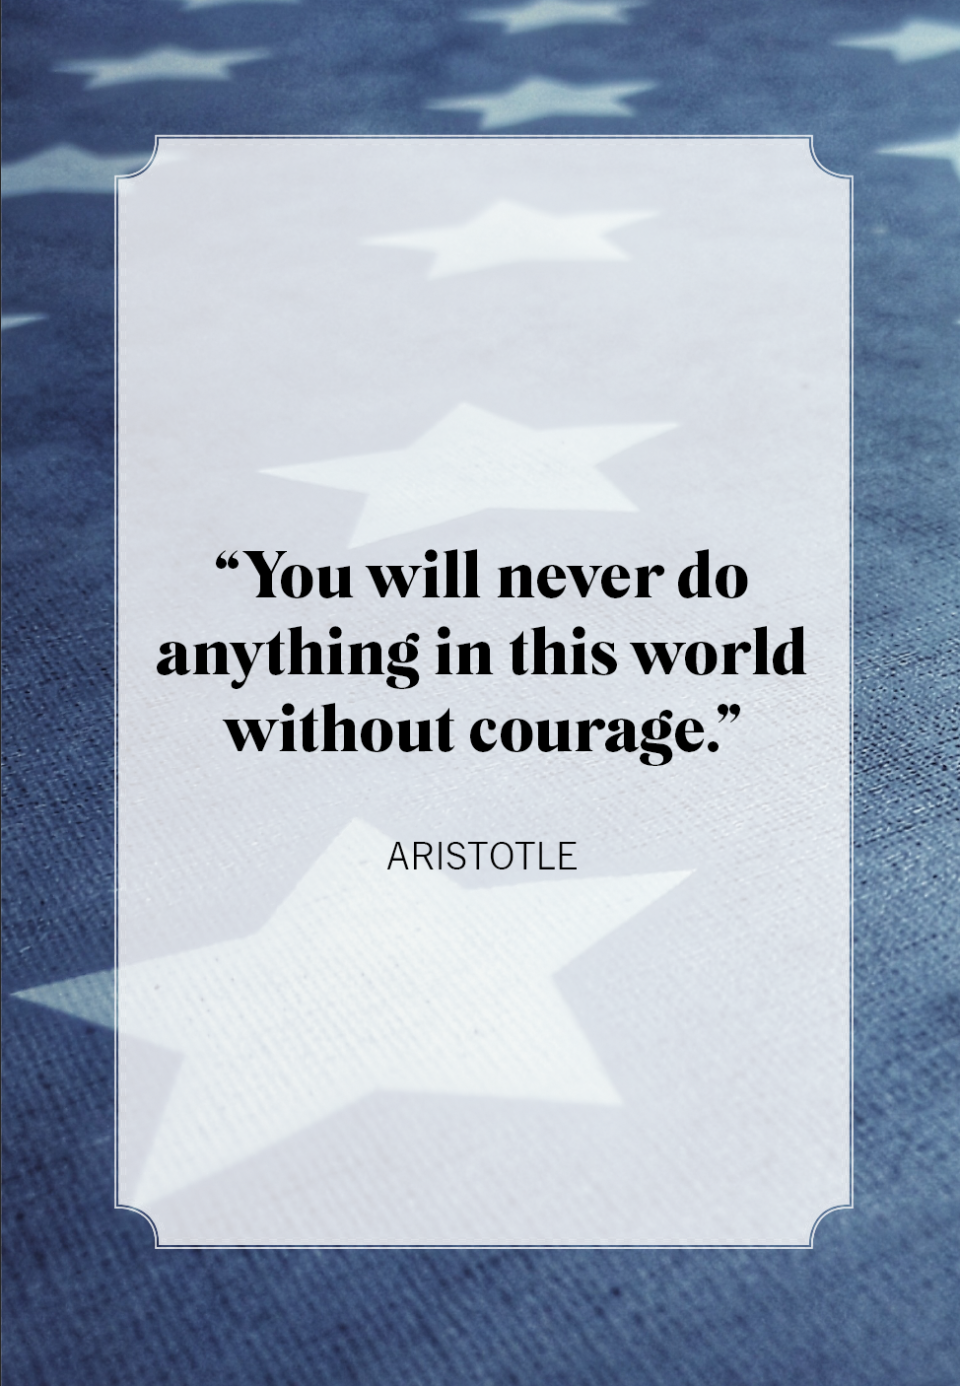 memorial day quotes aristotle